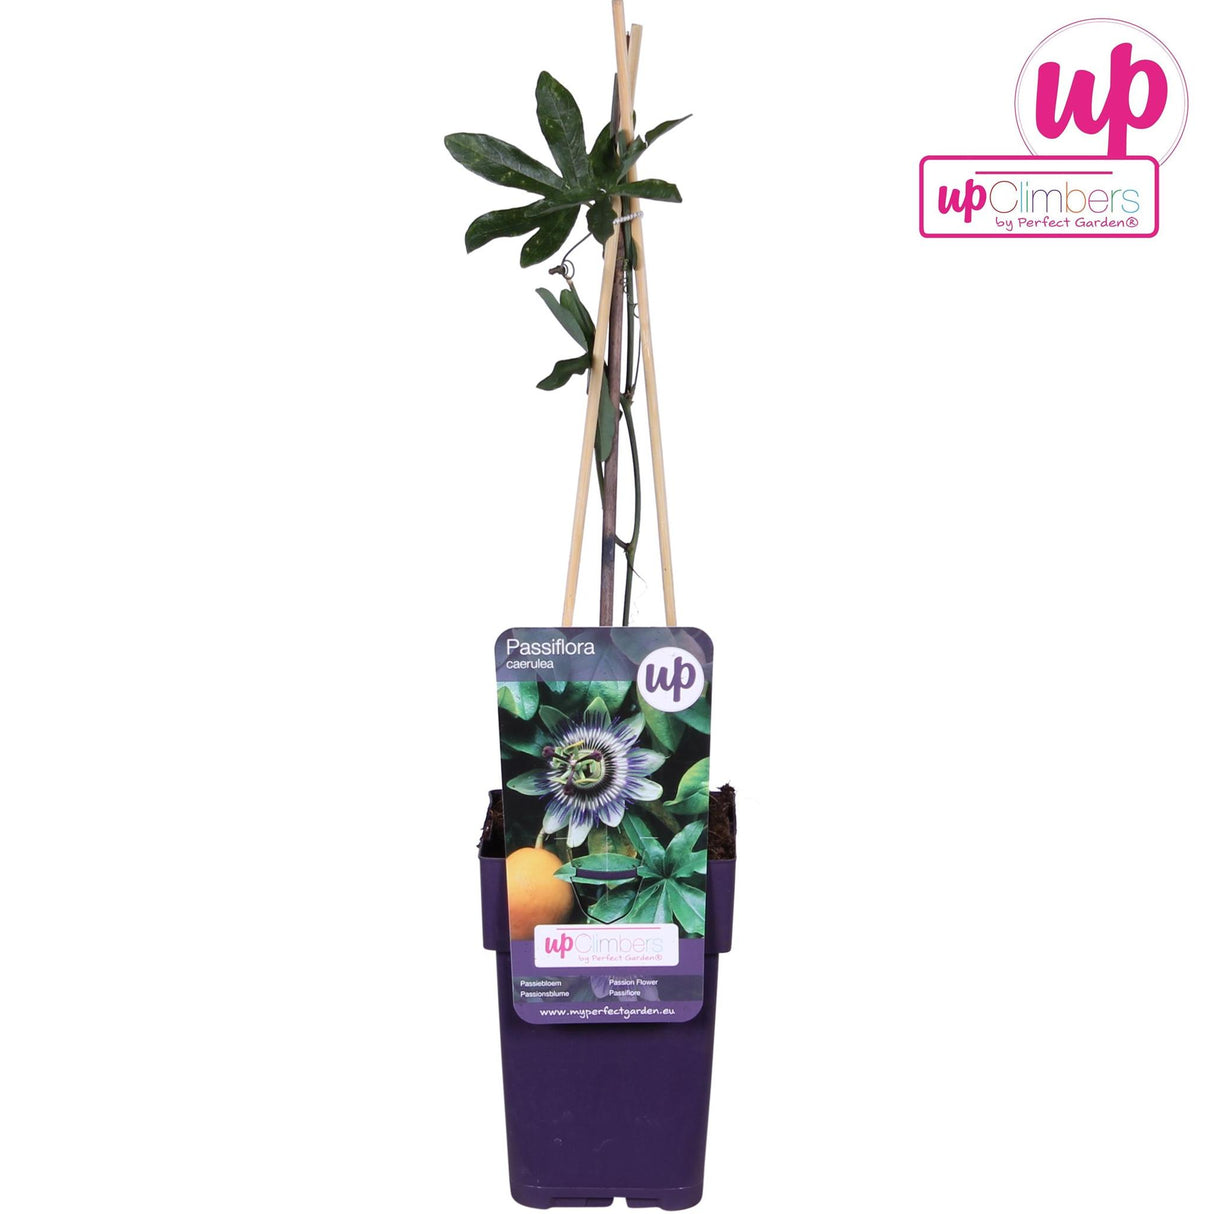 Passiflore Caerulea - plante d'extérieur grimpante fleurie